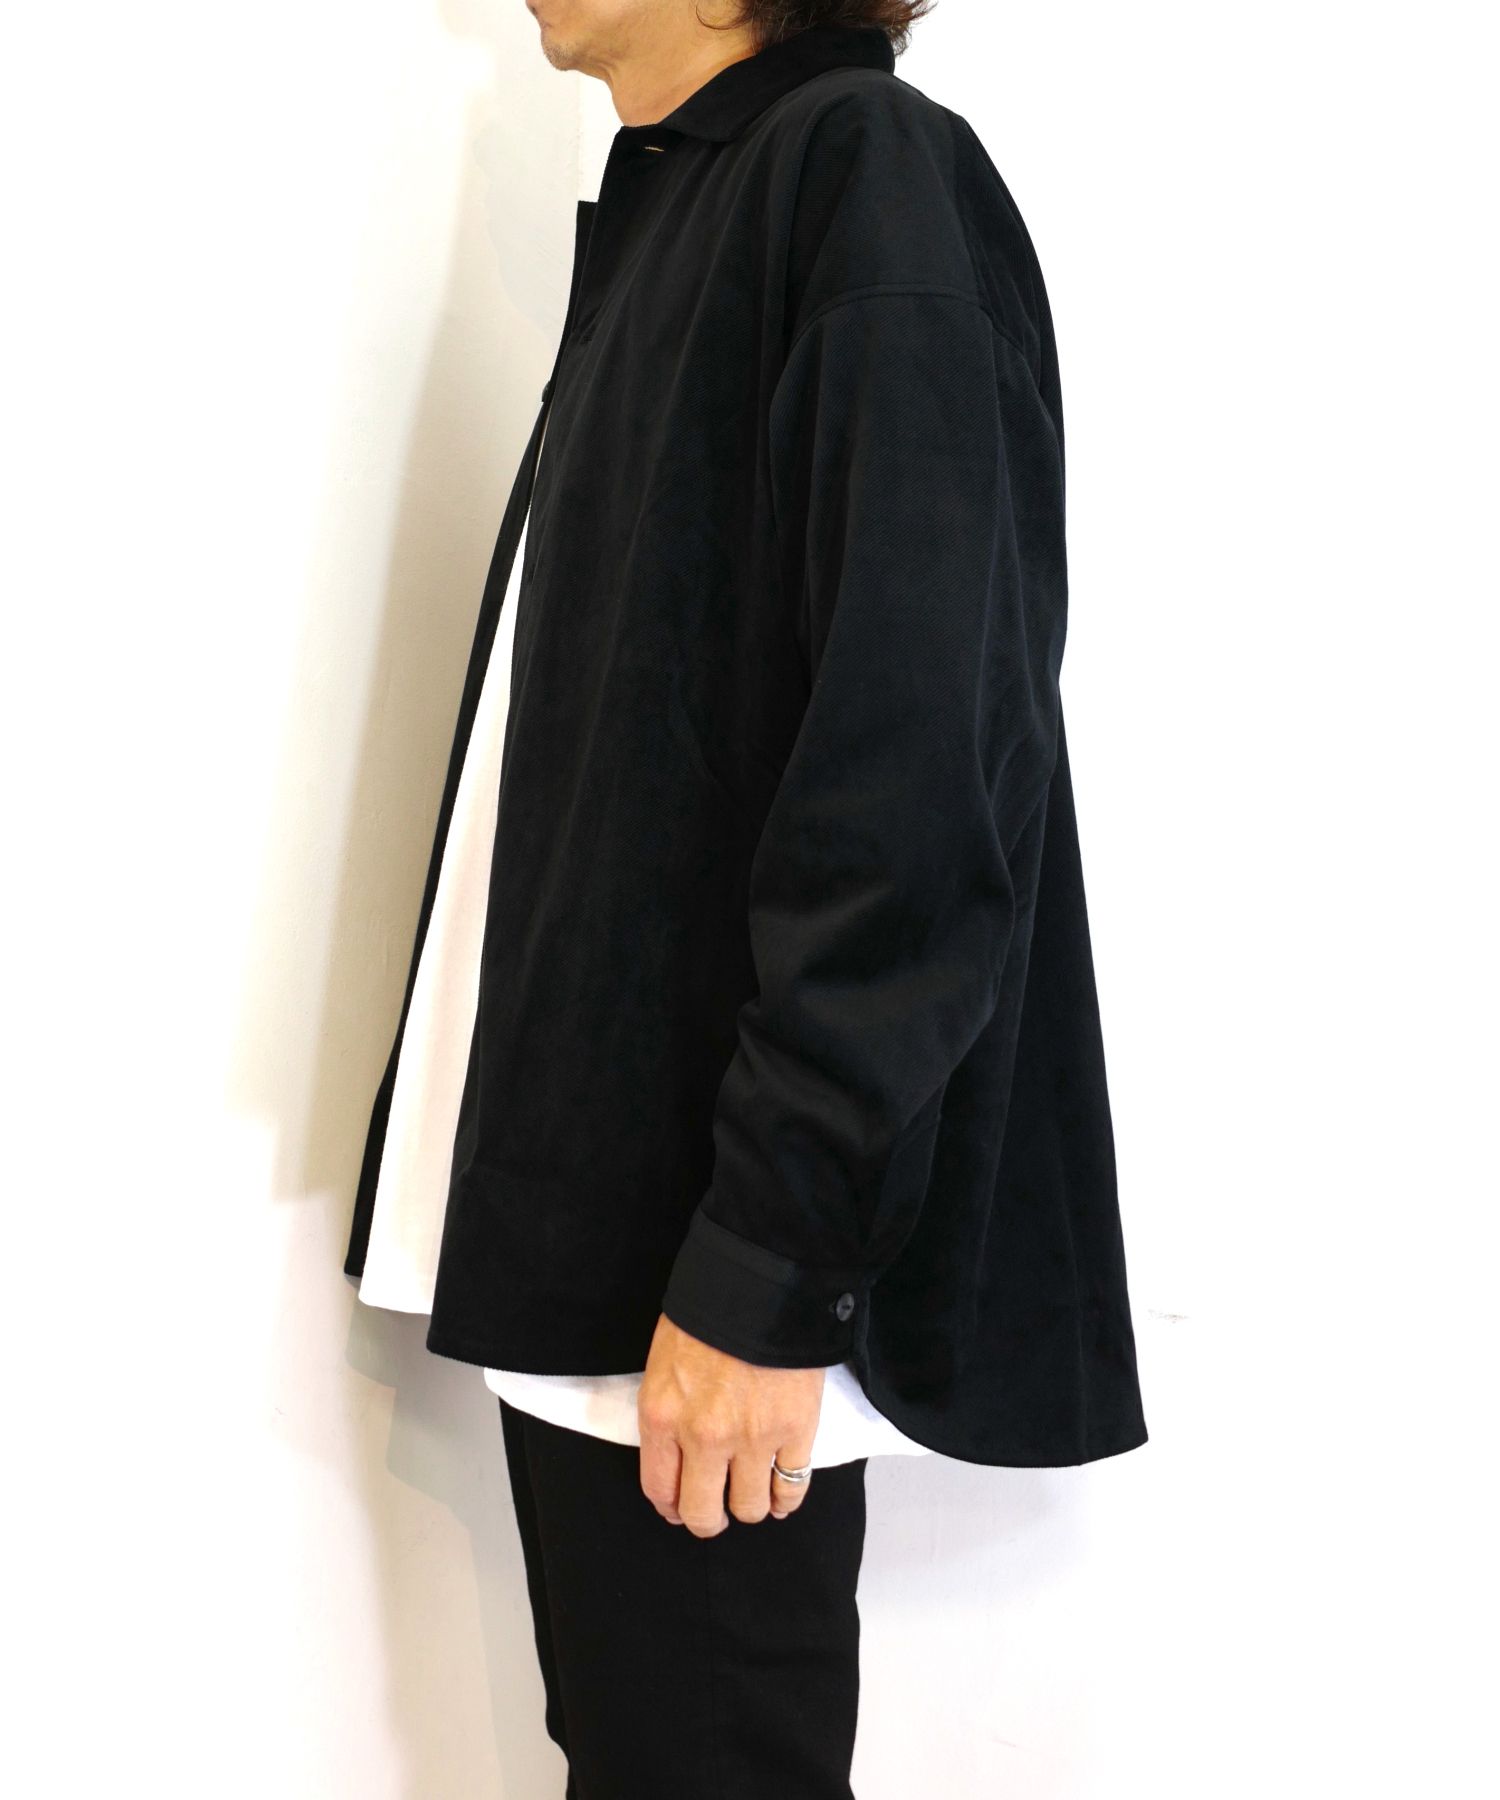 ROTTWEILER - R9 VELOR SHIRT (BLACK) / ベロア オープンカラーシャツ